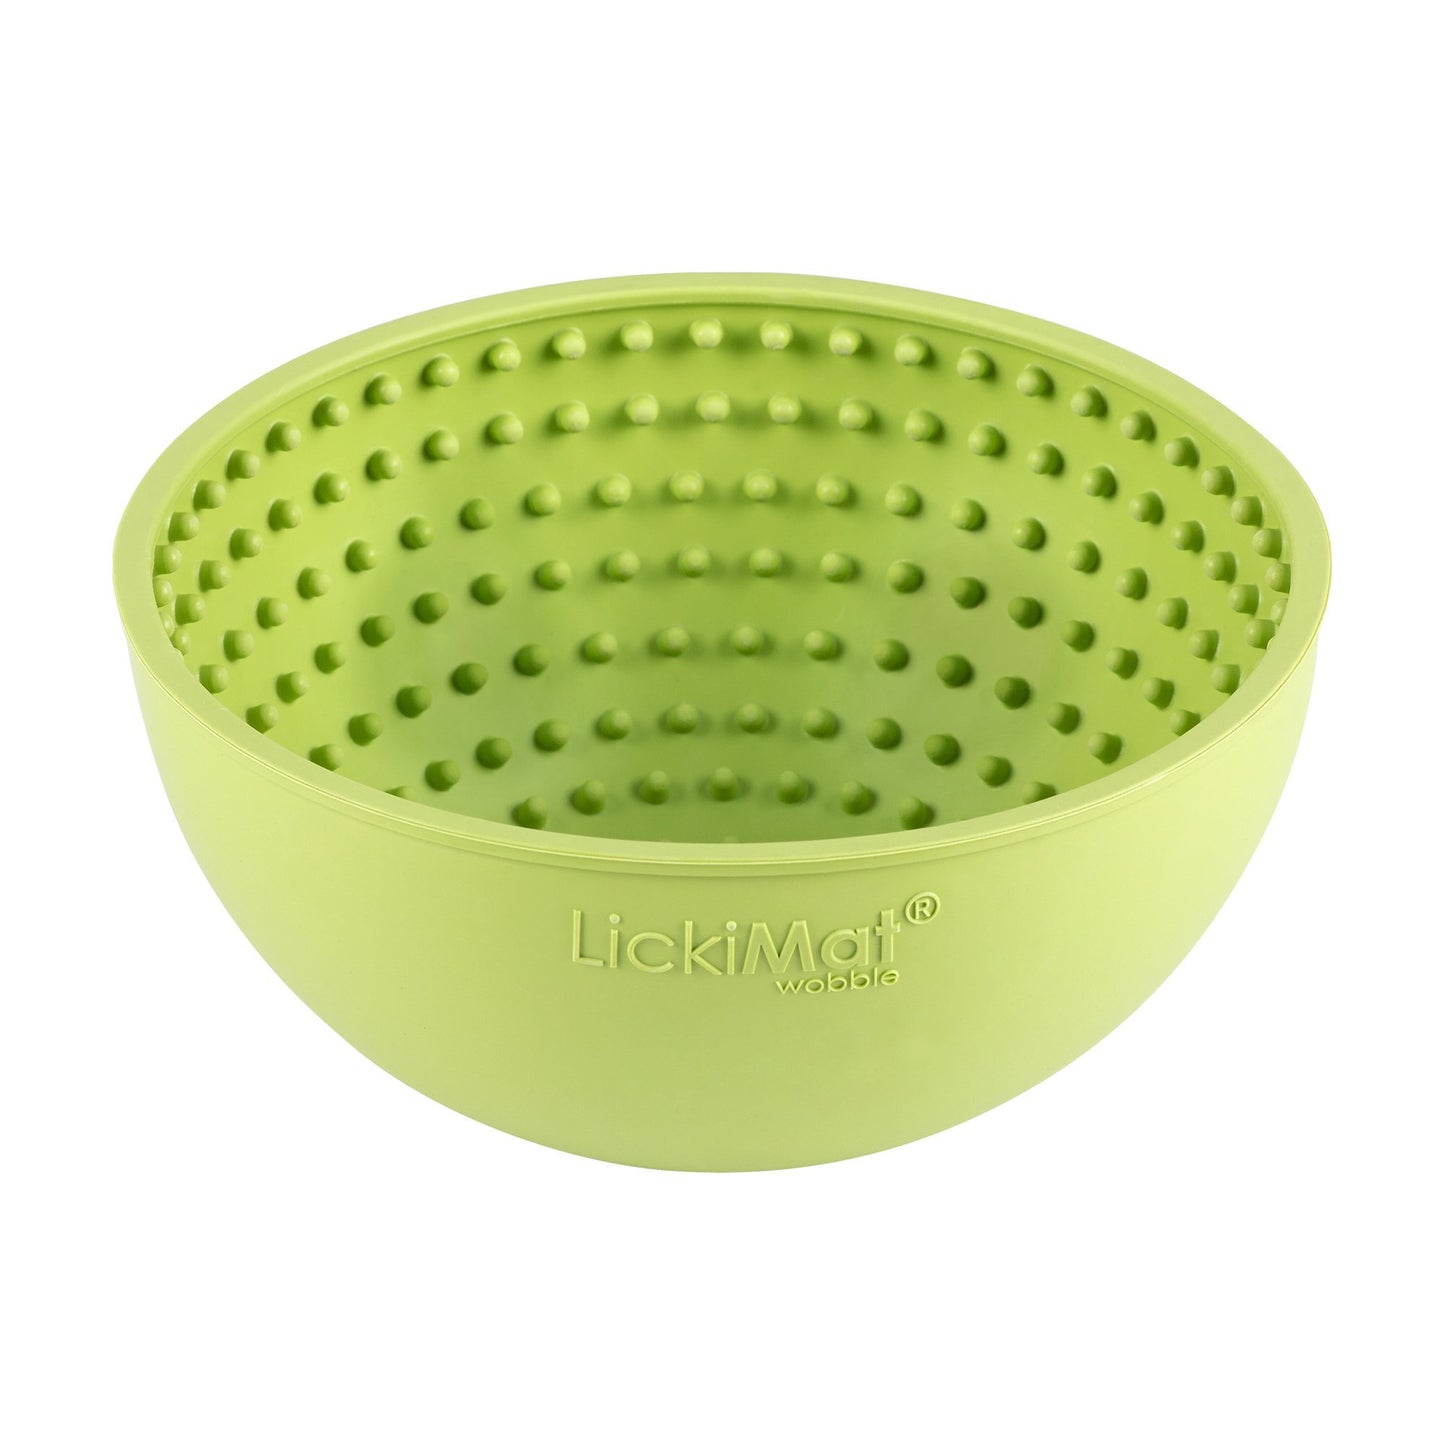 LickiMat Dog Wobble Bowl - Woonona Petfood & Produce